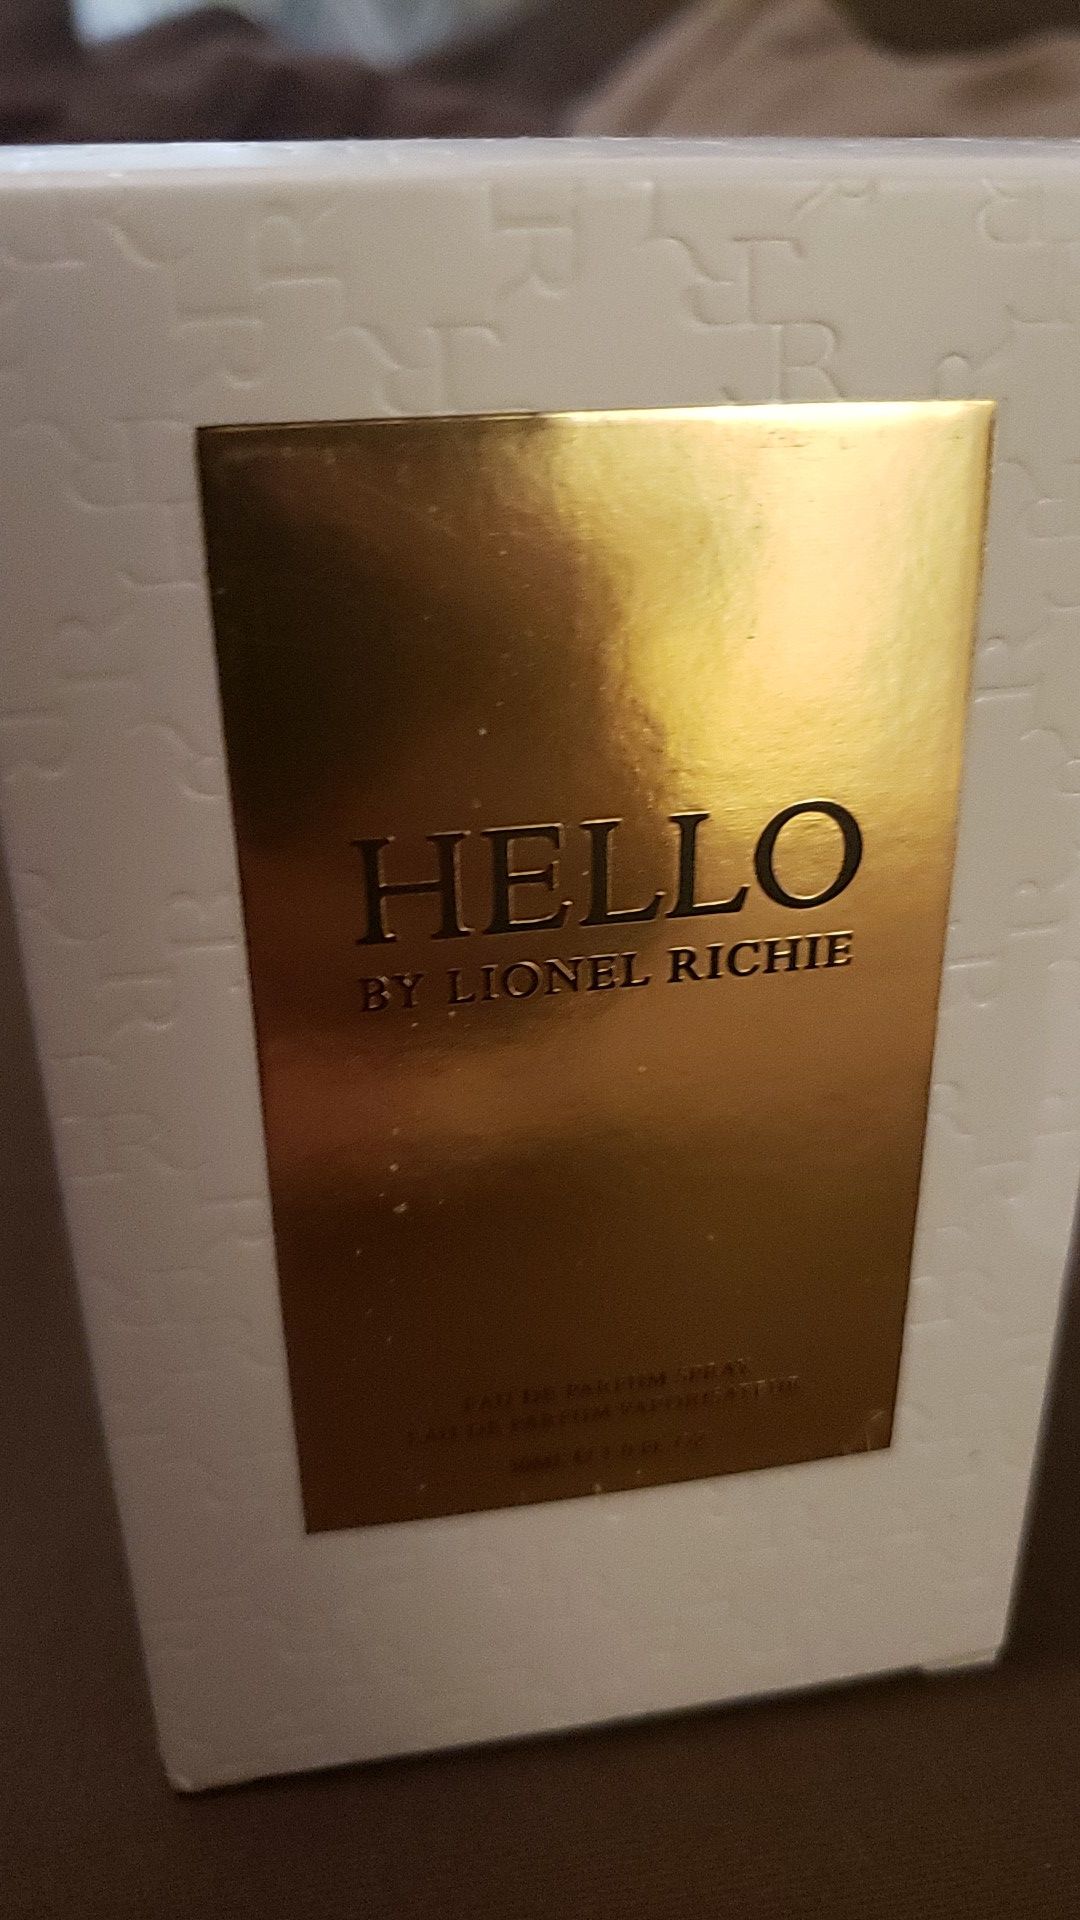 (Women) Hello by Lionel Richie